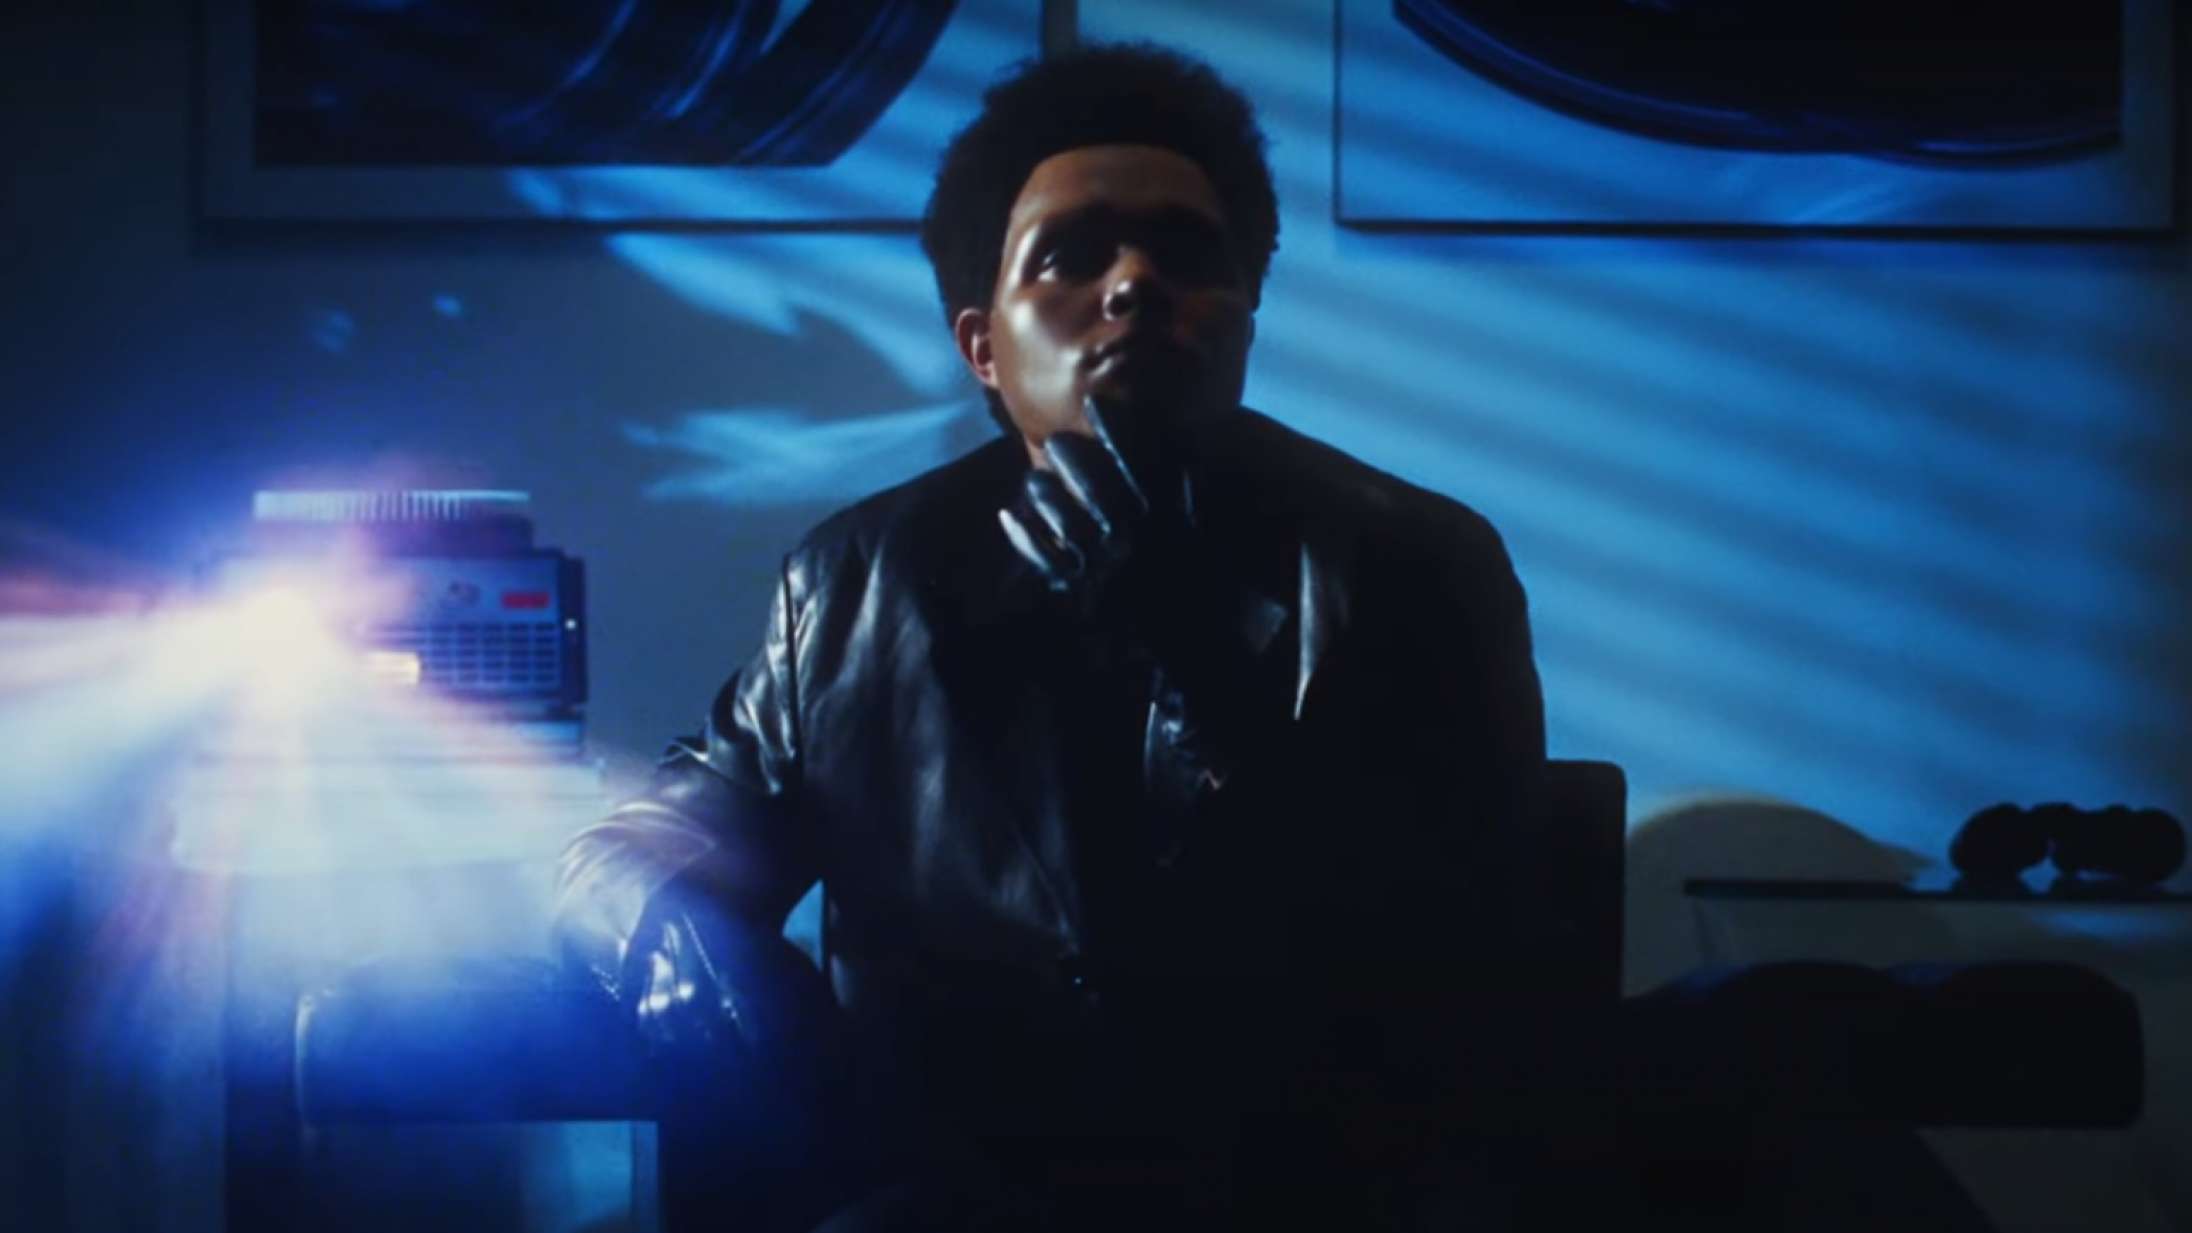 The Weeknd sender en hilsen til kongen af spændingsfilm med ny musikvideo